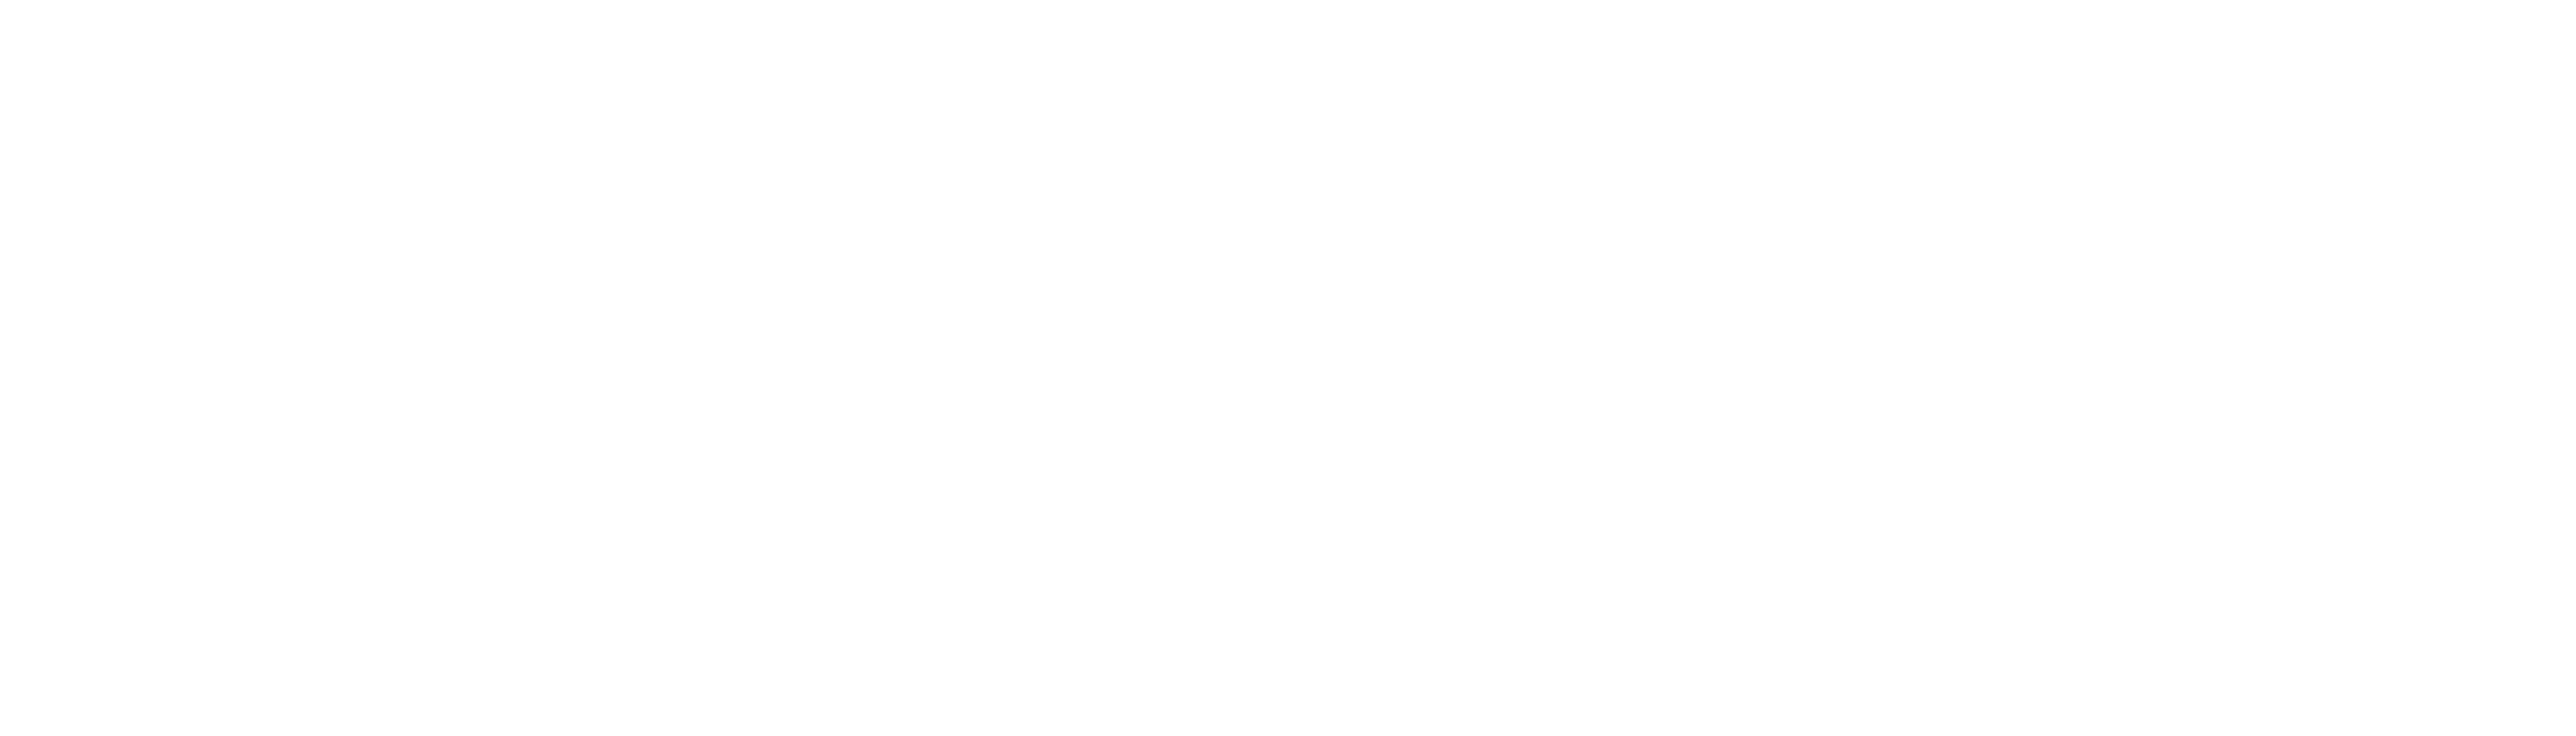 WenBid | Web3 Deals